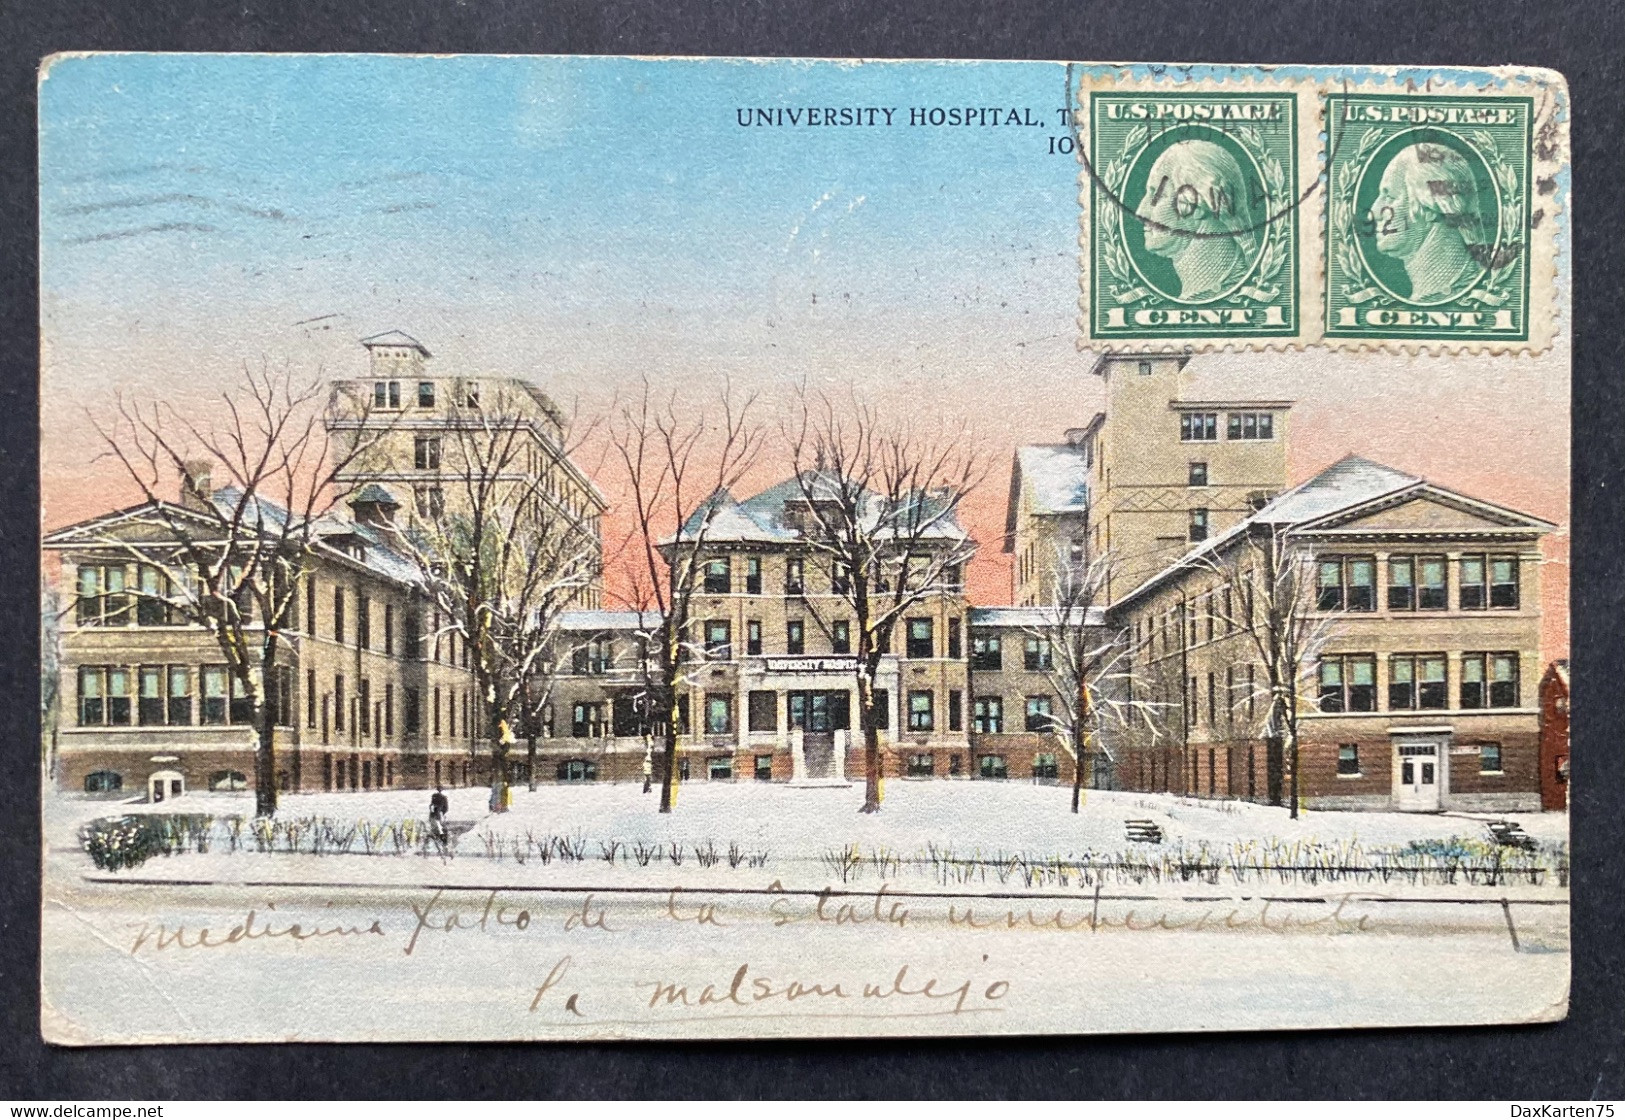 Iowa University Hospital Ca. 1920 - Iowa City